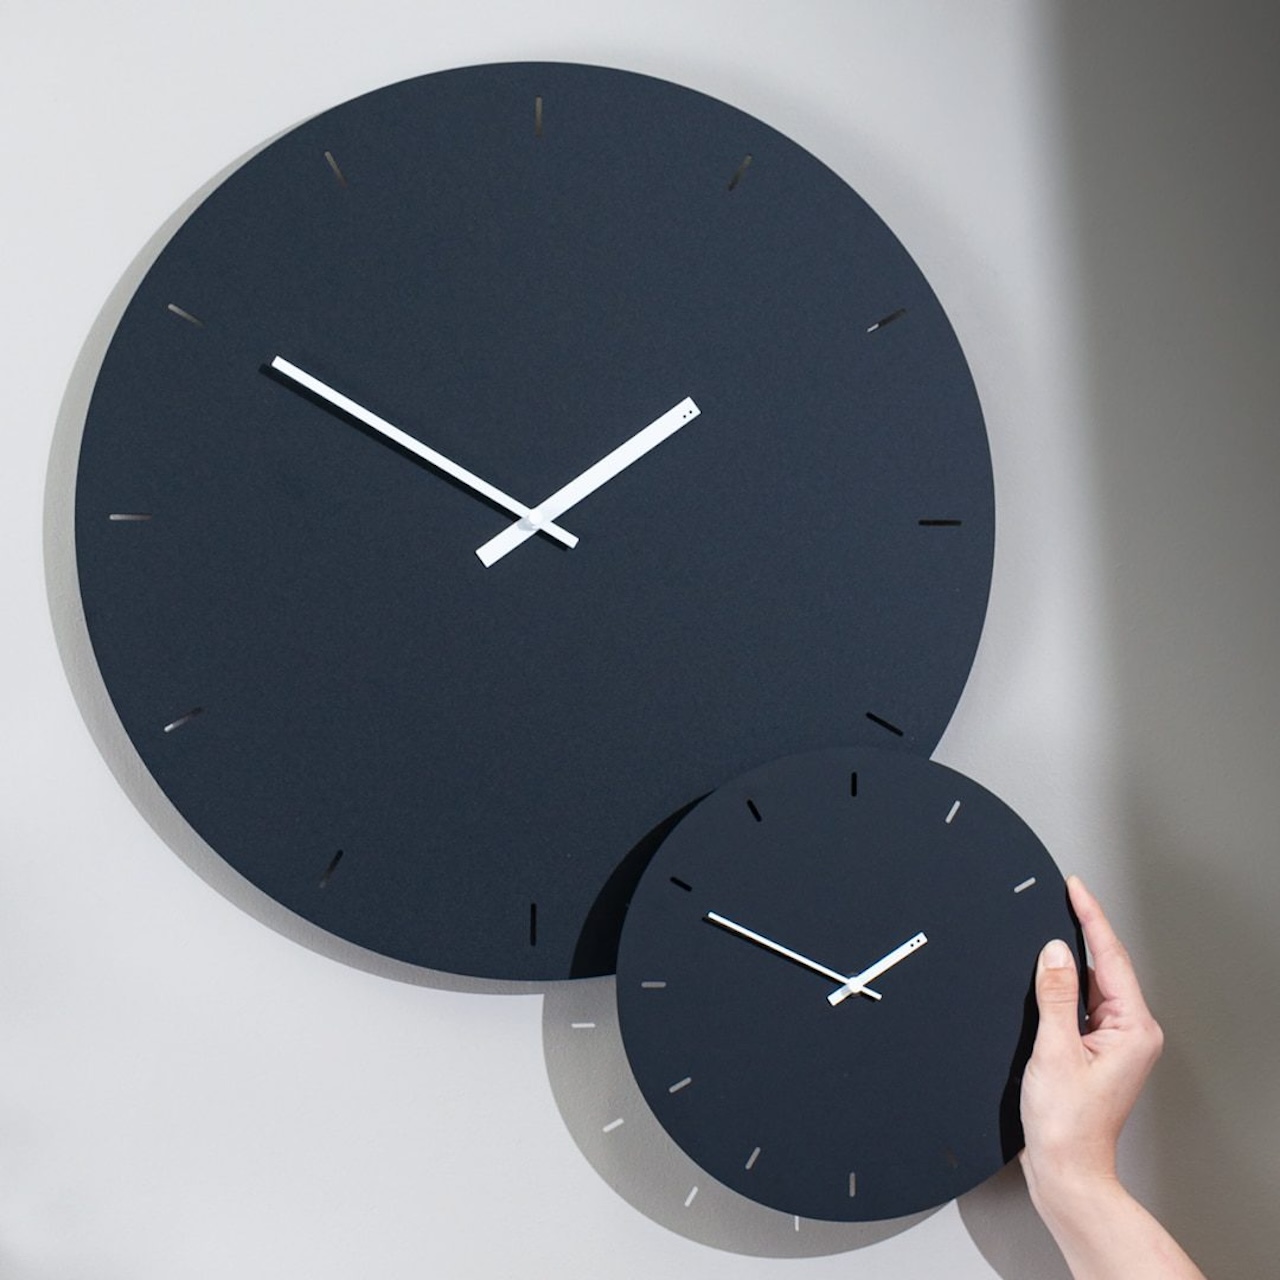 How Big Should A Wall Clock Be